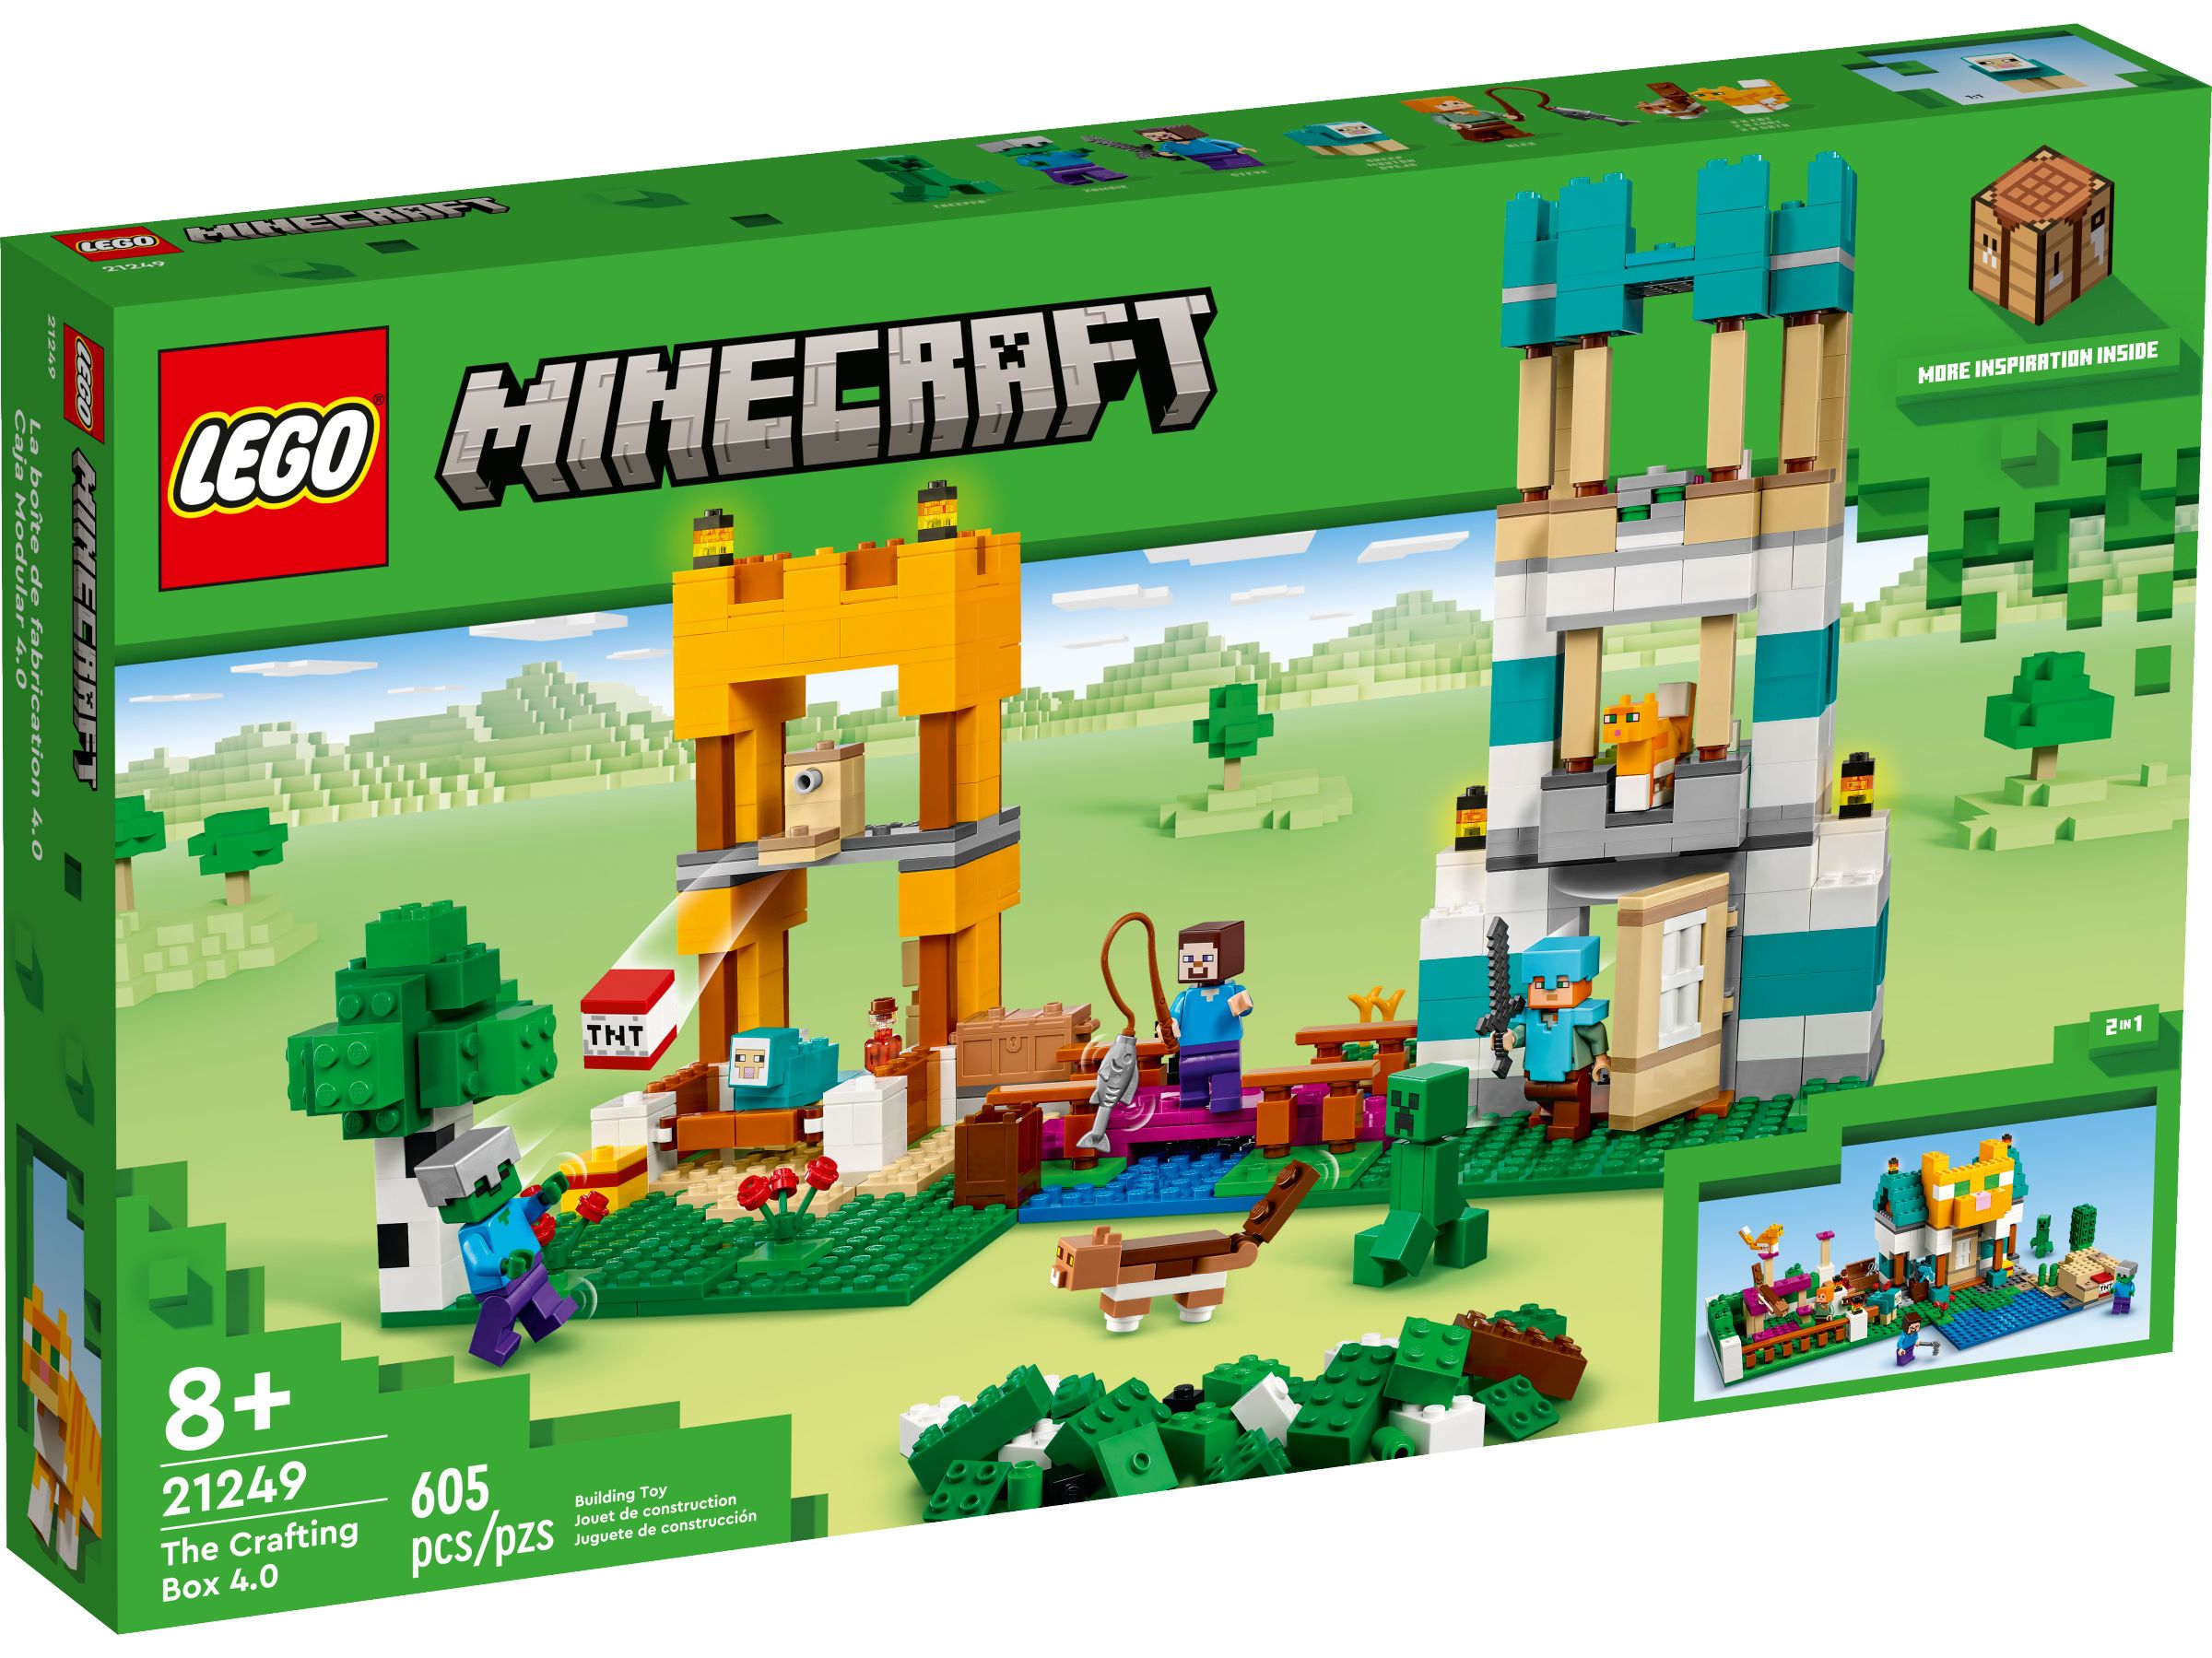 LEGO Minecraft 21249 Die Crafting-Box 4.0 LEGO_21249_alt1.jpg